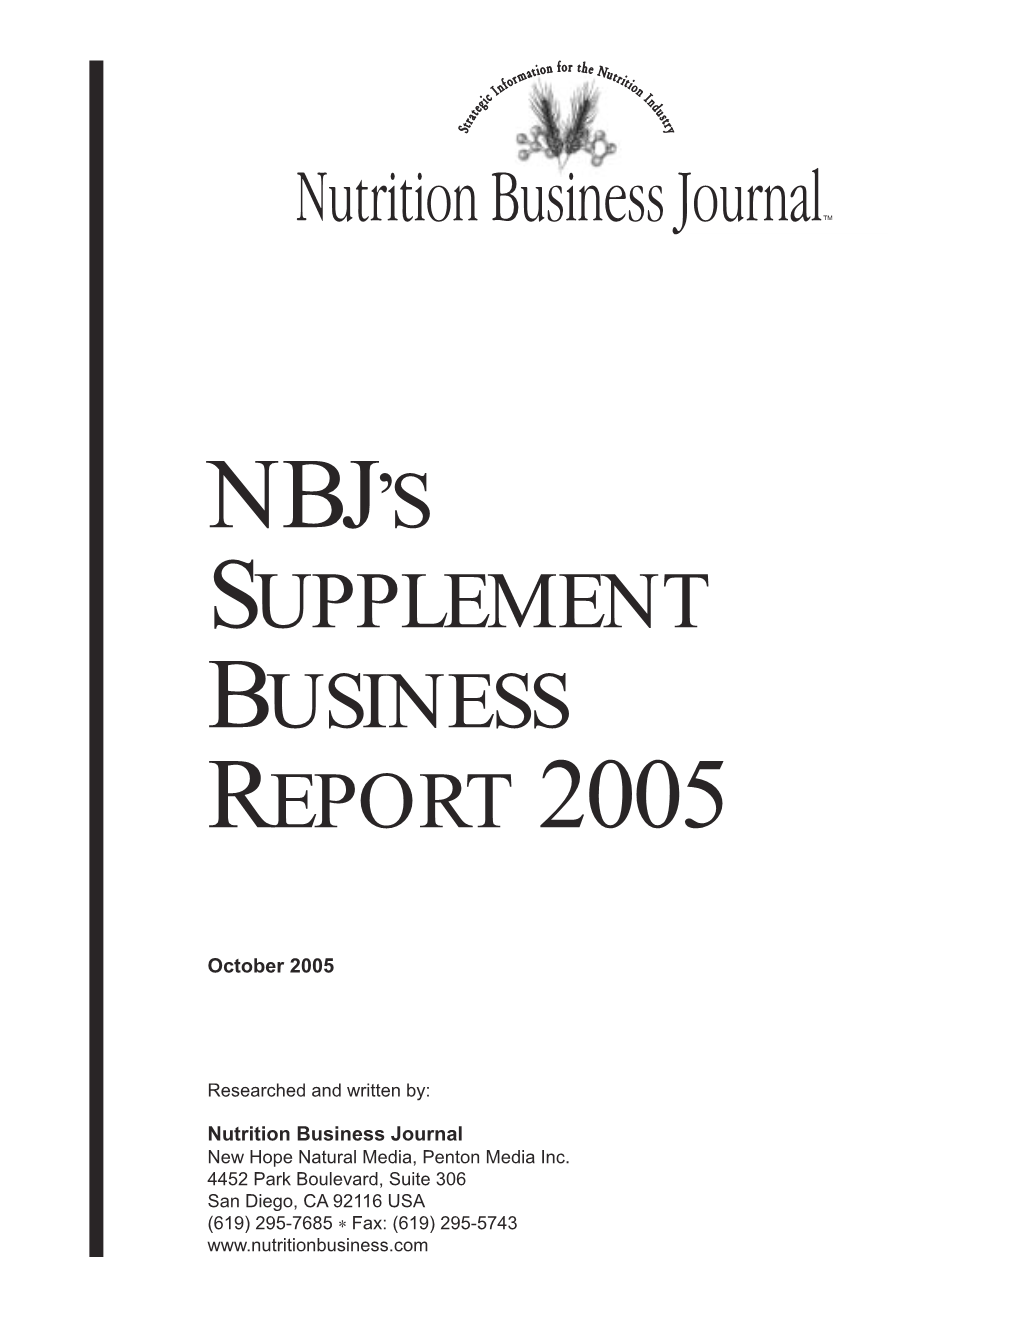 Nbj's Supplement Business Report 2005